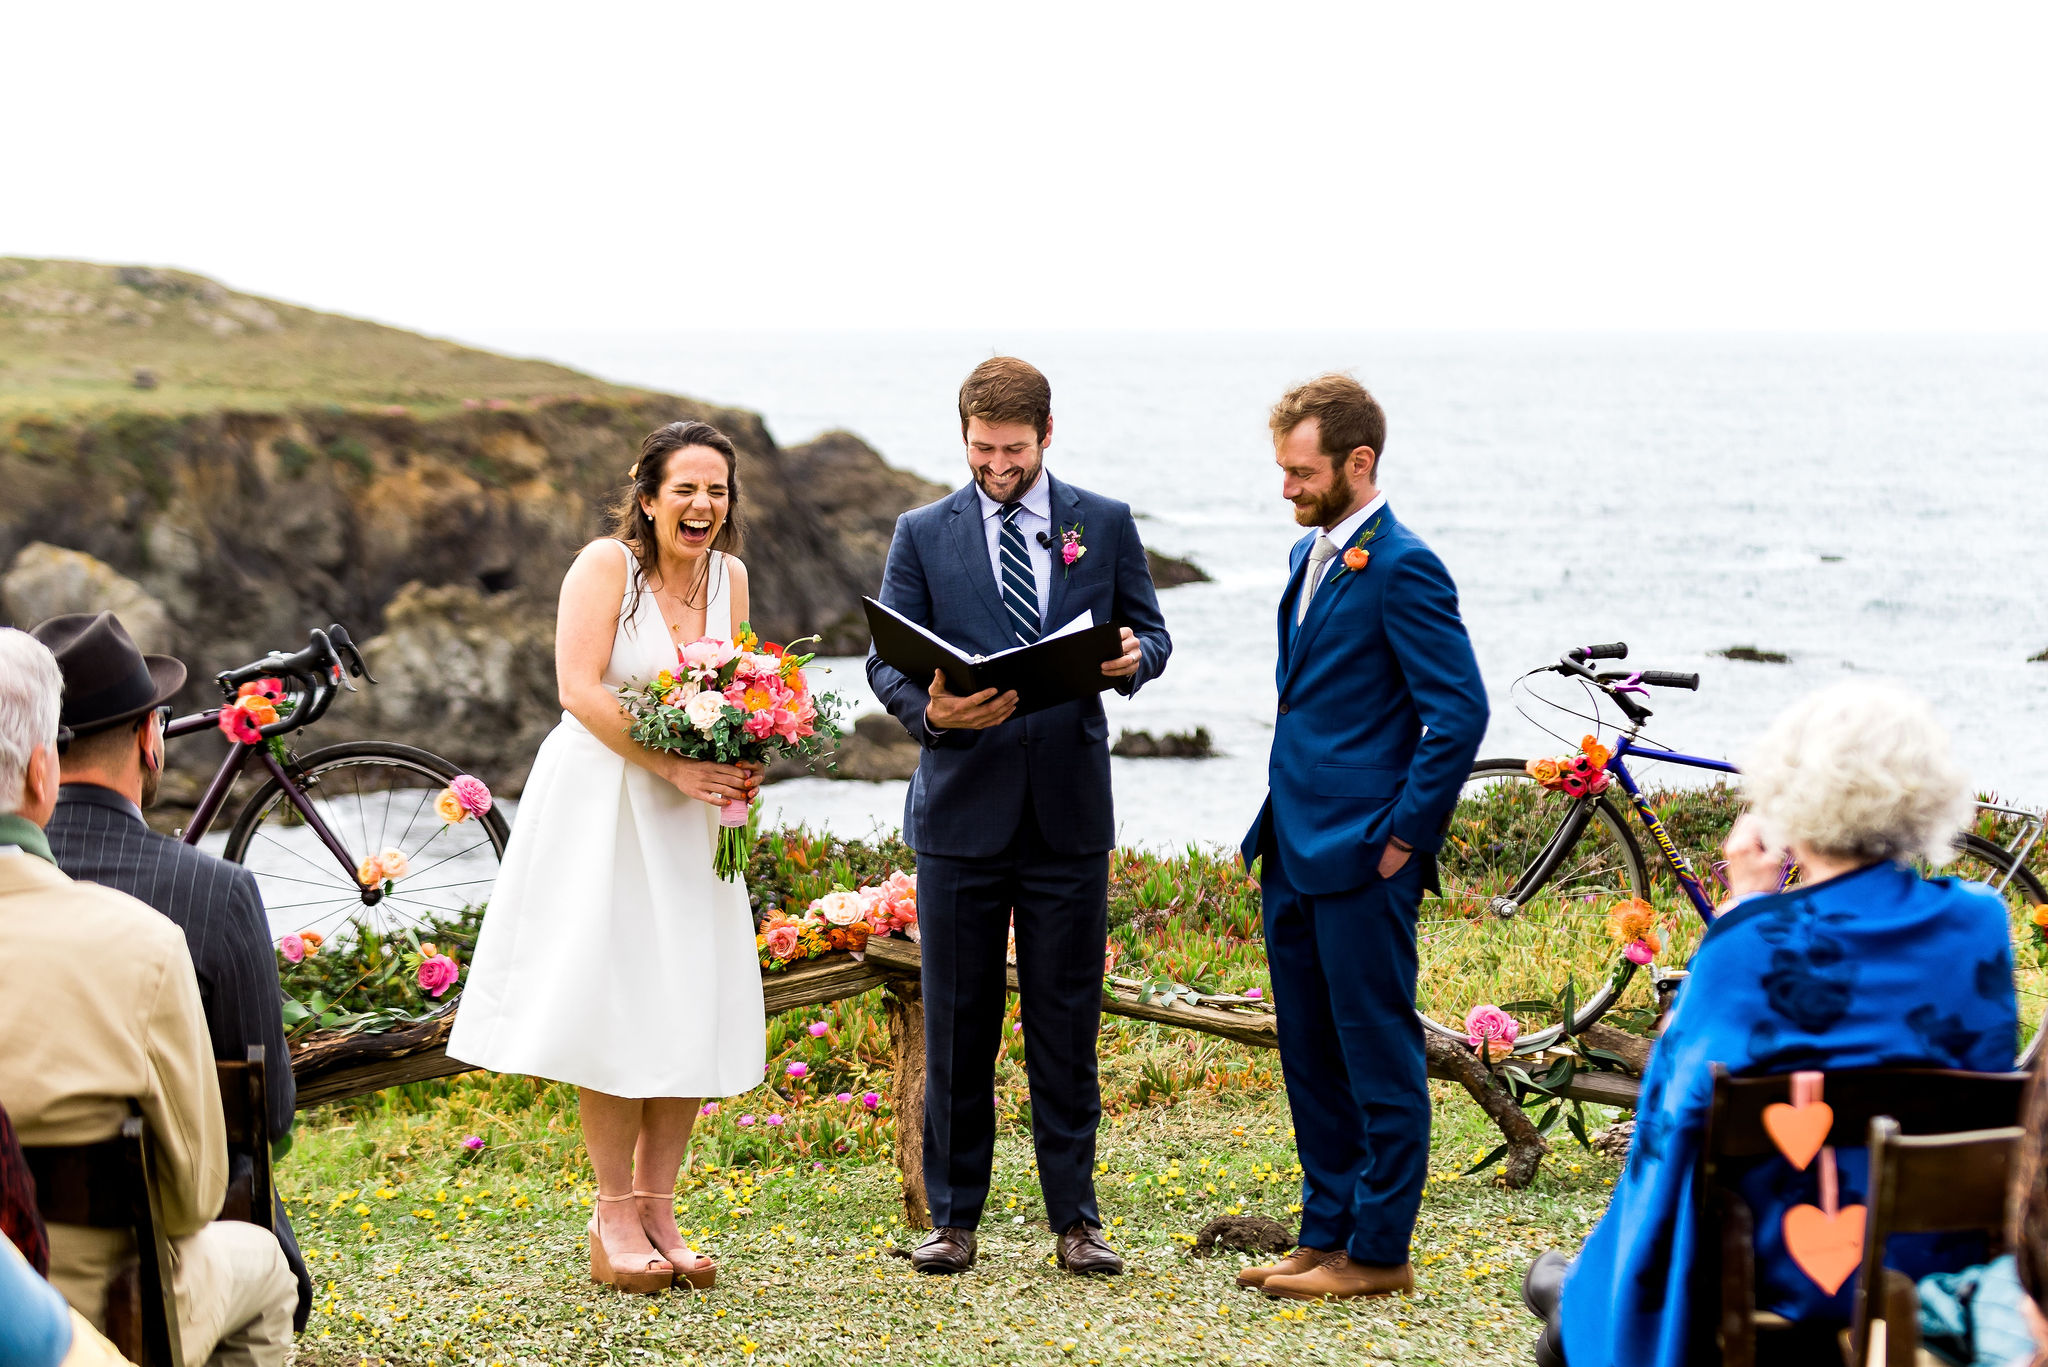 Bicycle Themed wedding